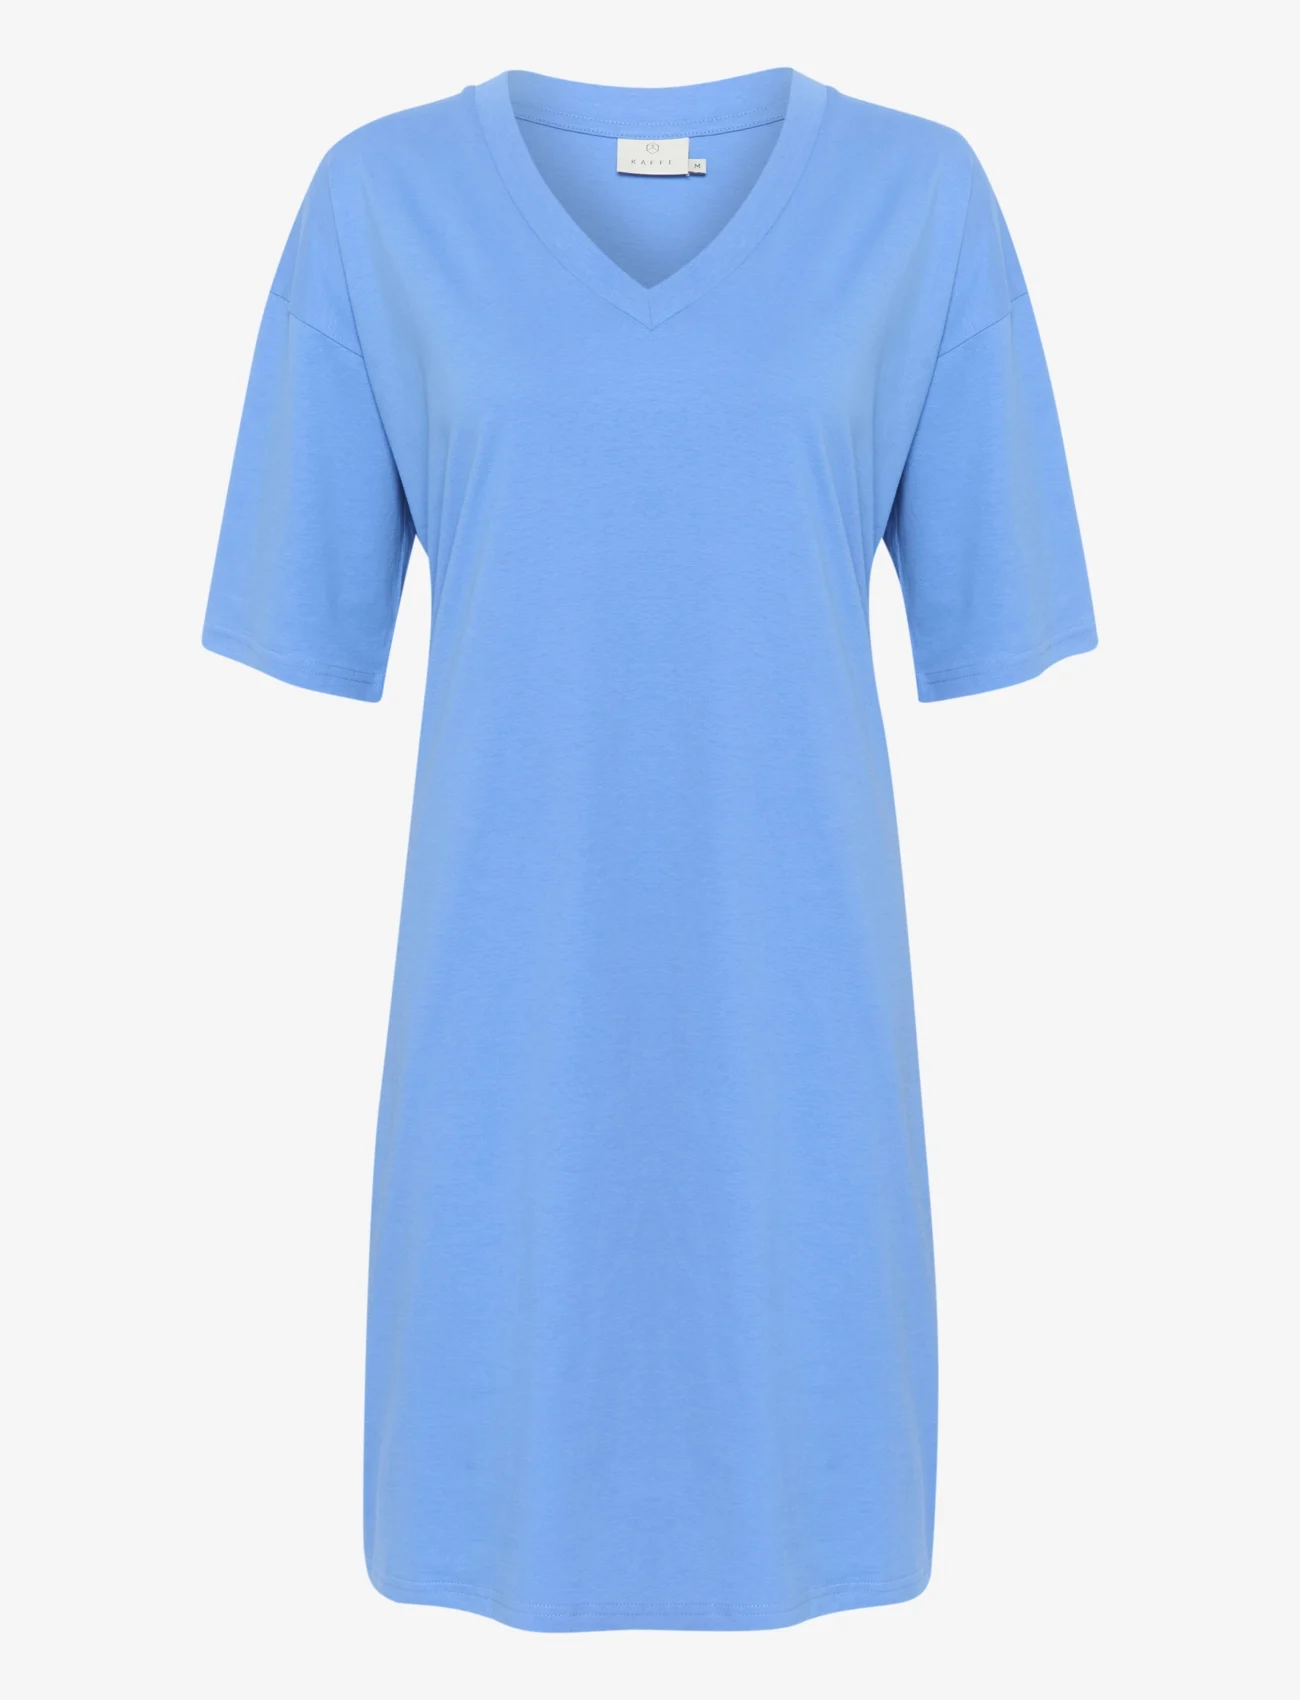 Kaffe - KAedna Short Dress - t-skjortekjoler - ultramarine - 0